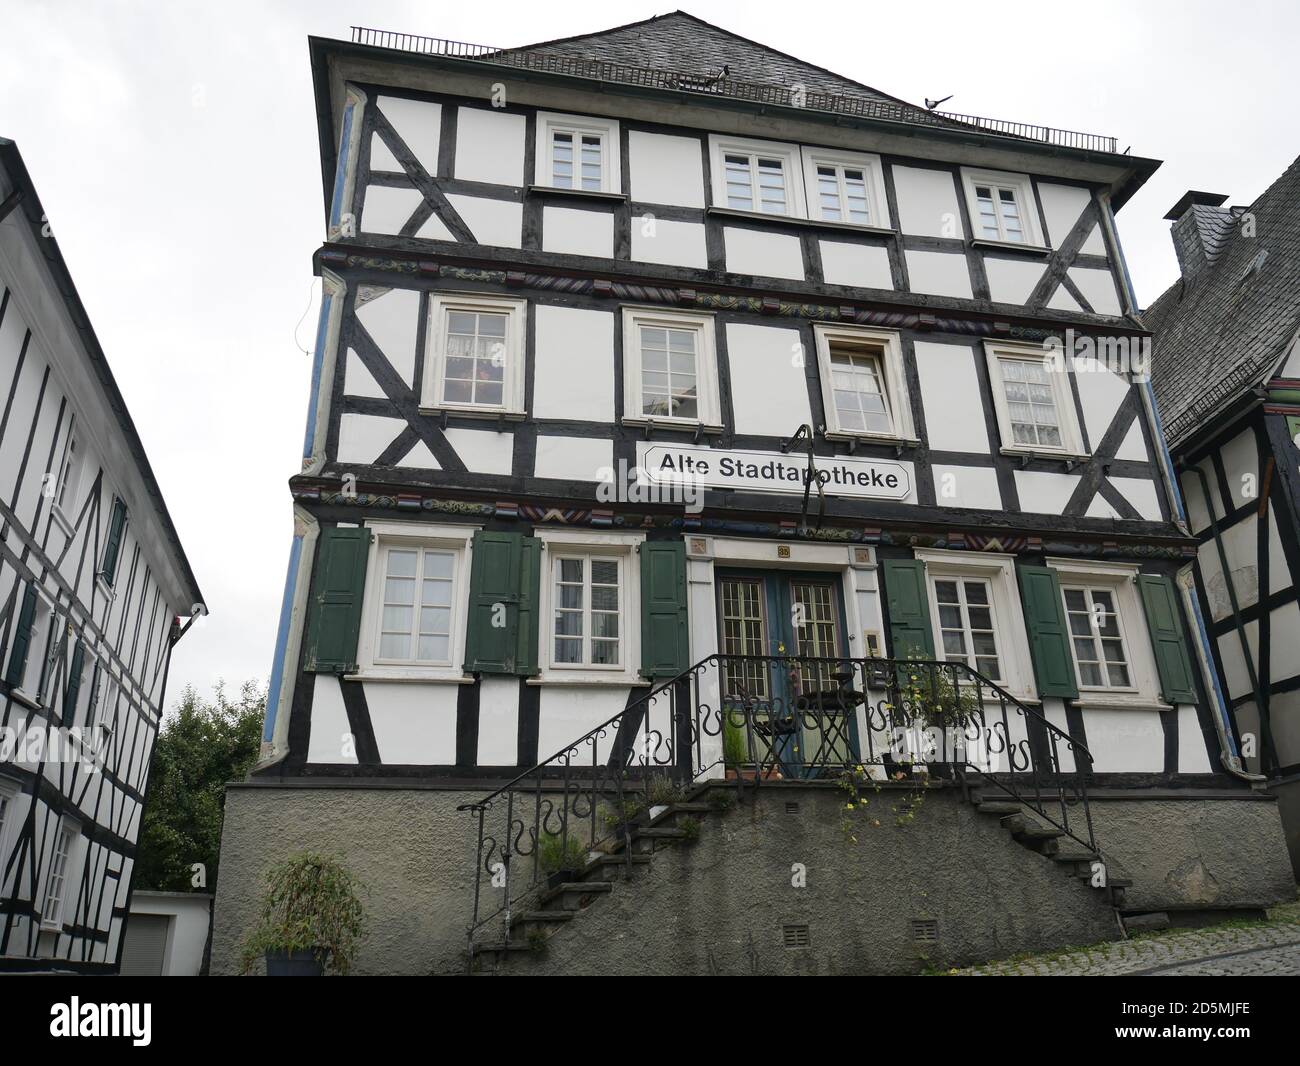 Altstadt von Freudenberg. Wünderschöne Fachwerkhäuser, die sogenannten weißen Flecken von Freudenberg. Foto Stock